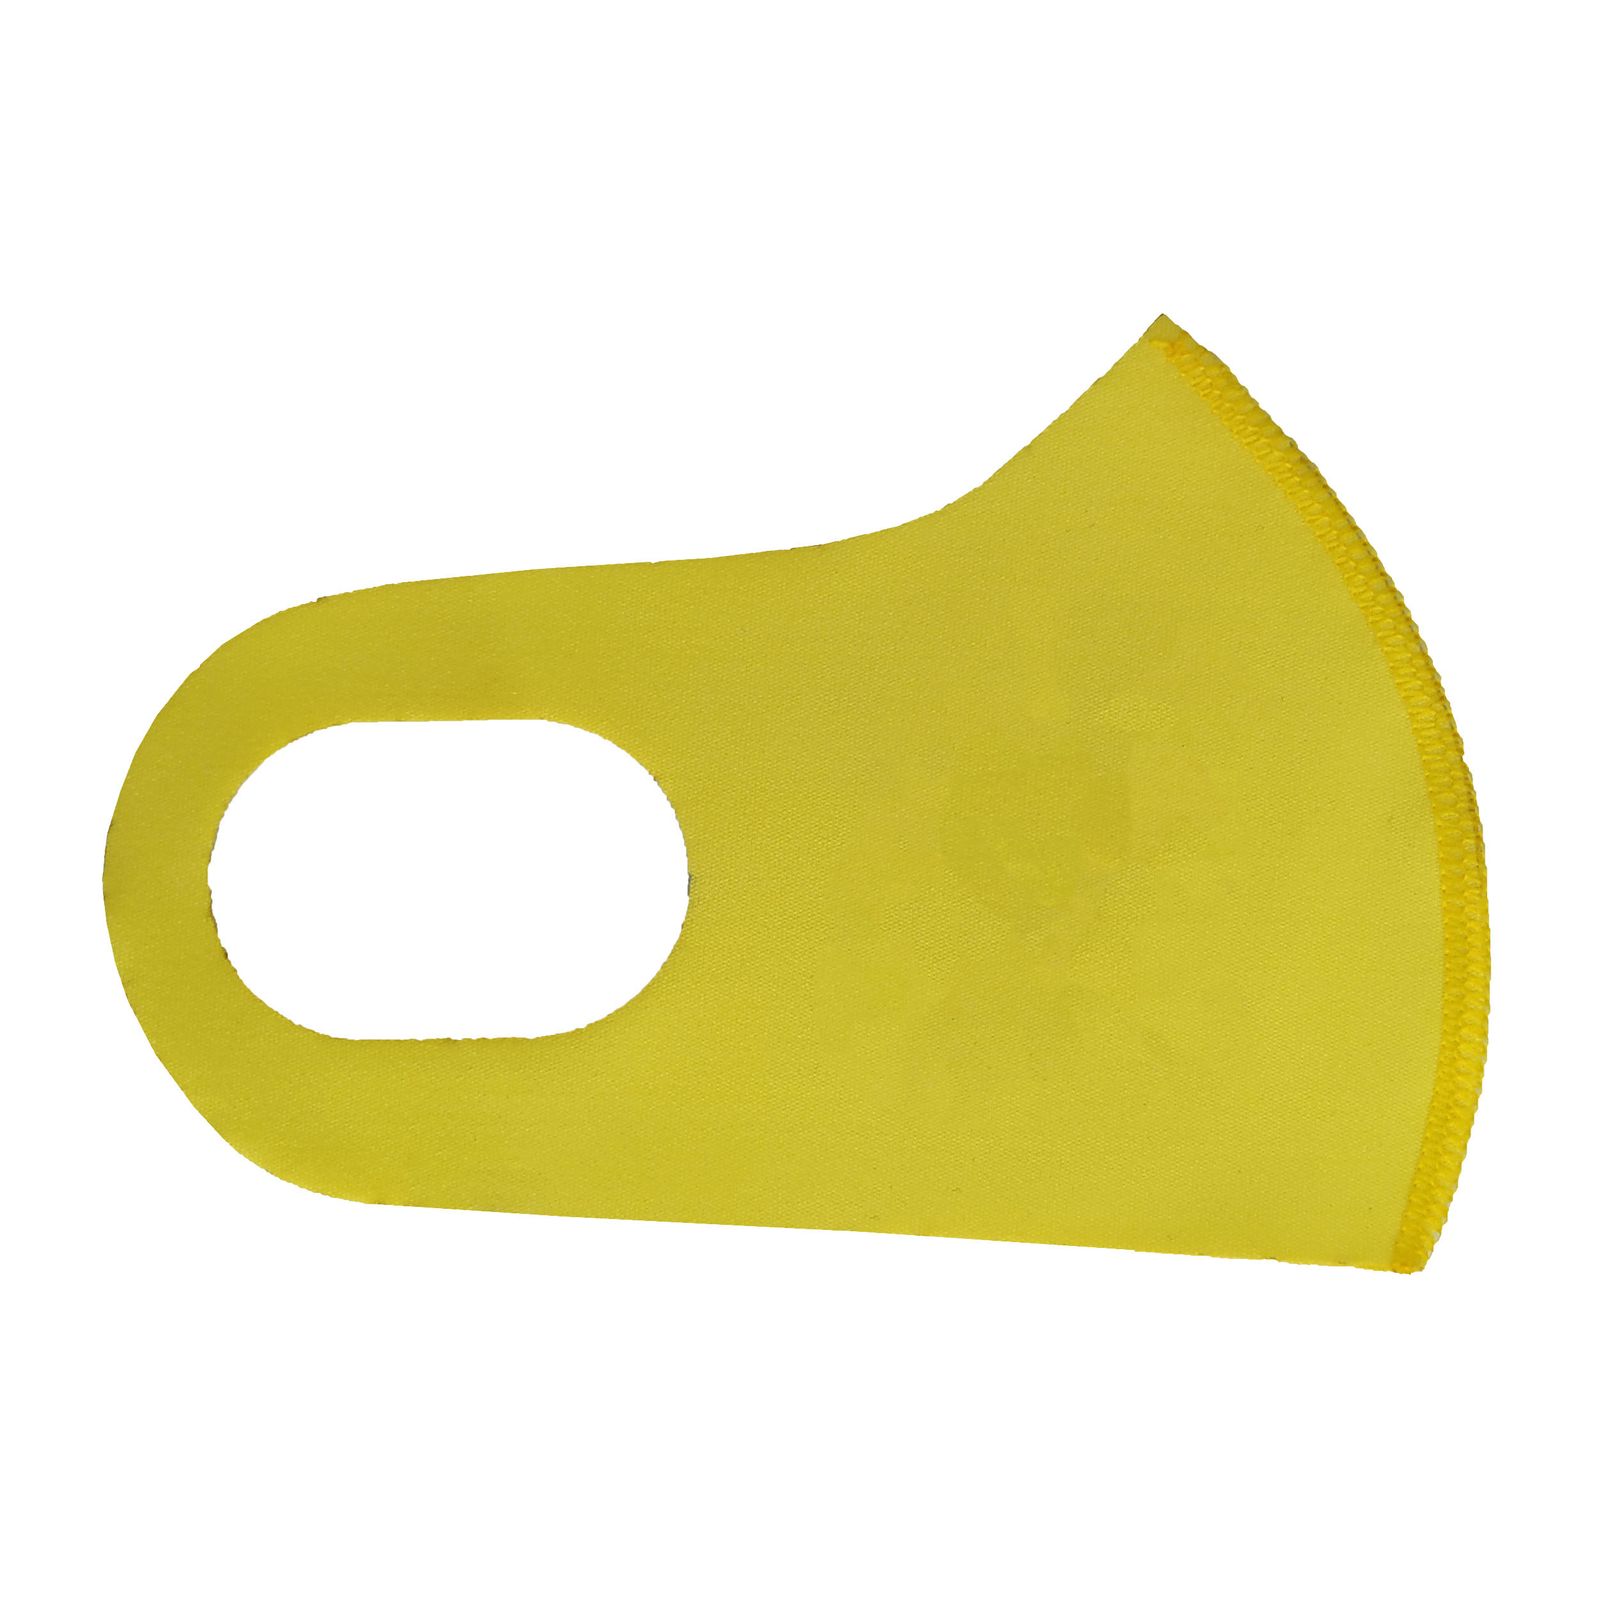 ماسک تزیینی بچگانه طرح PRINCESS کد 30696 رنگ زرد -  - 2